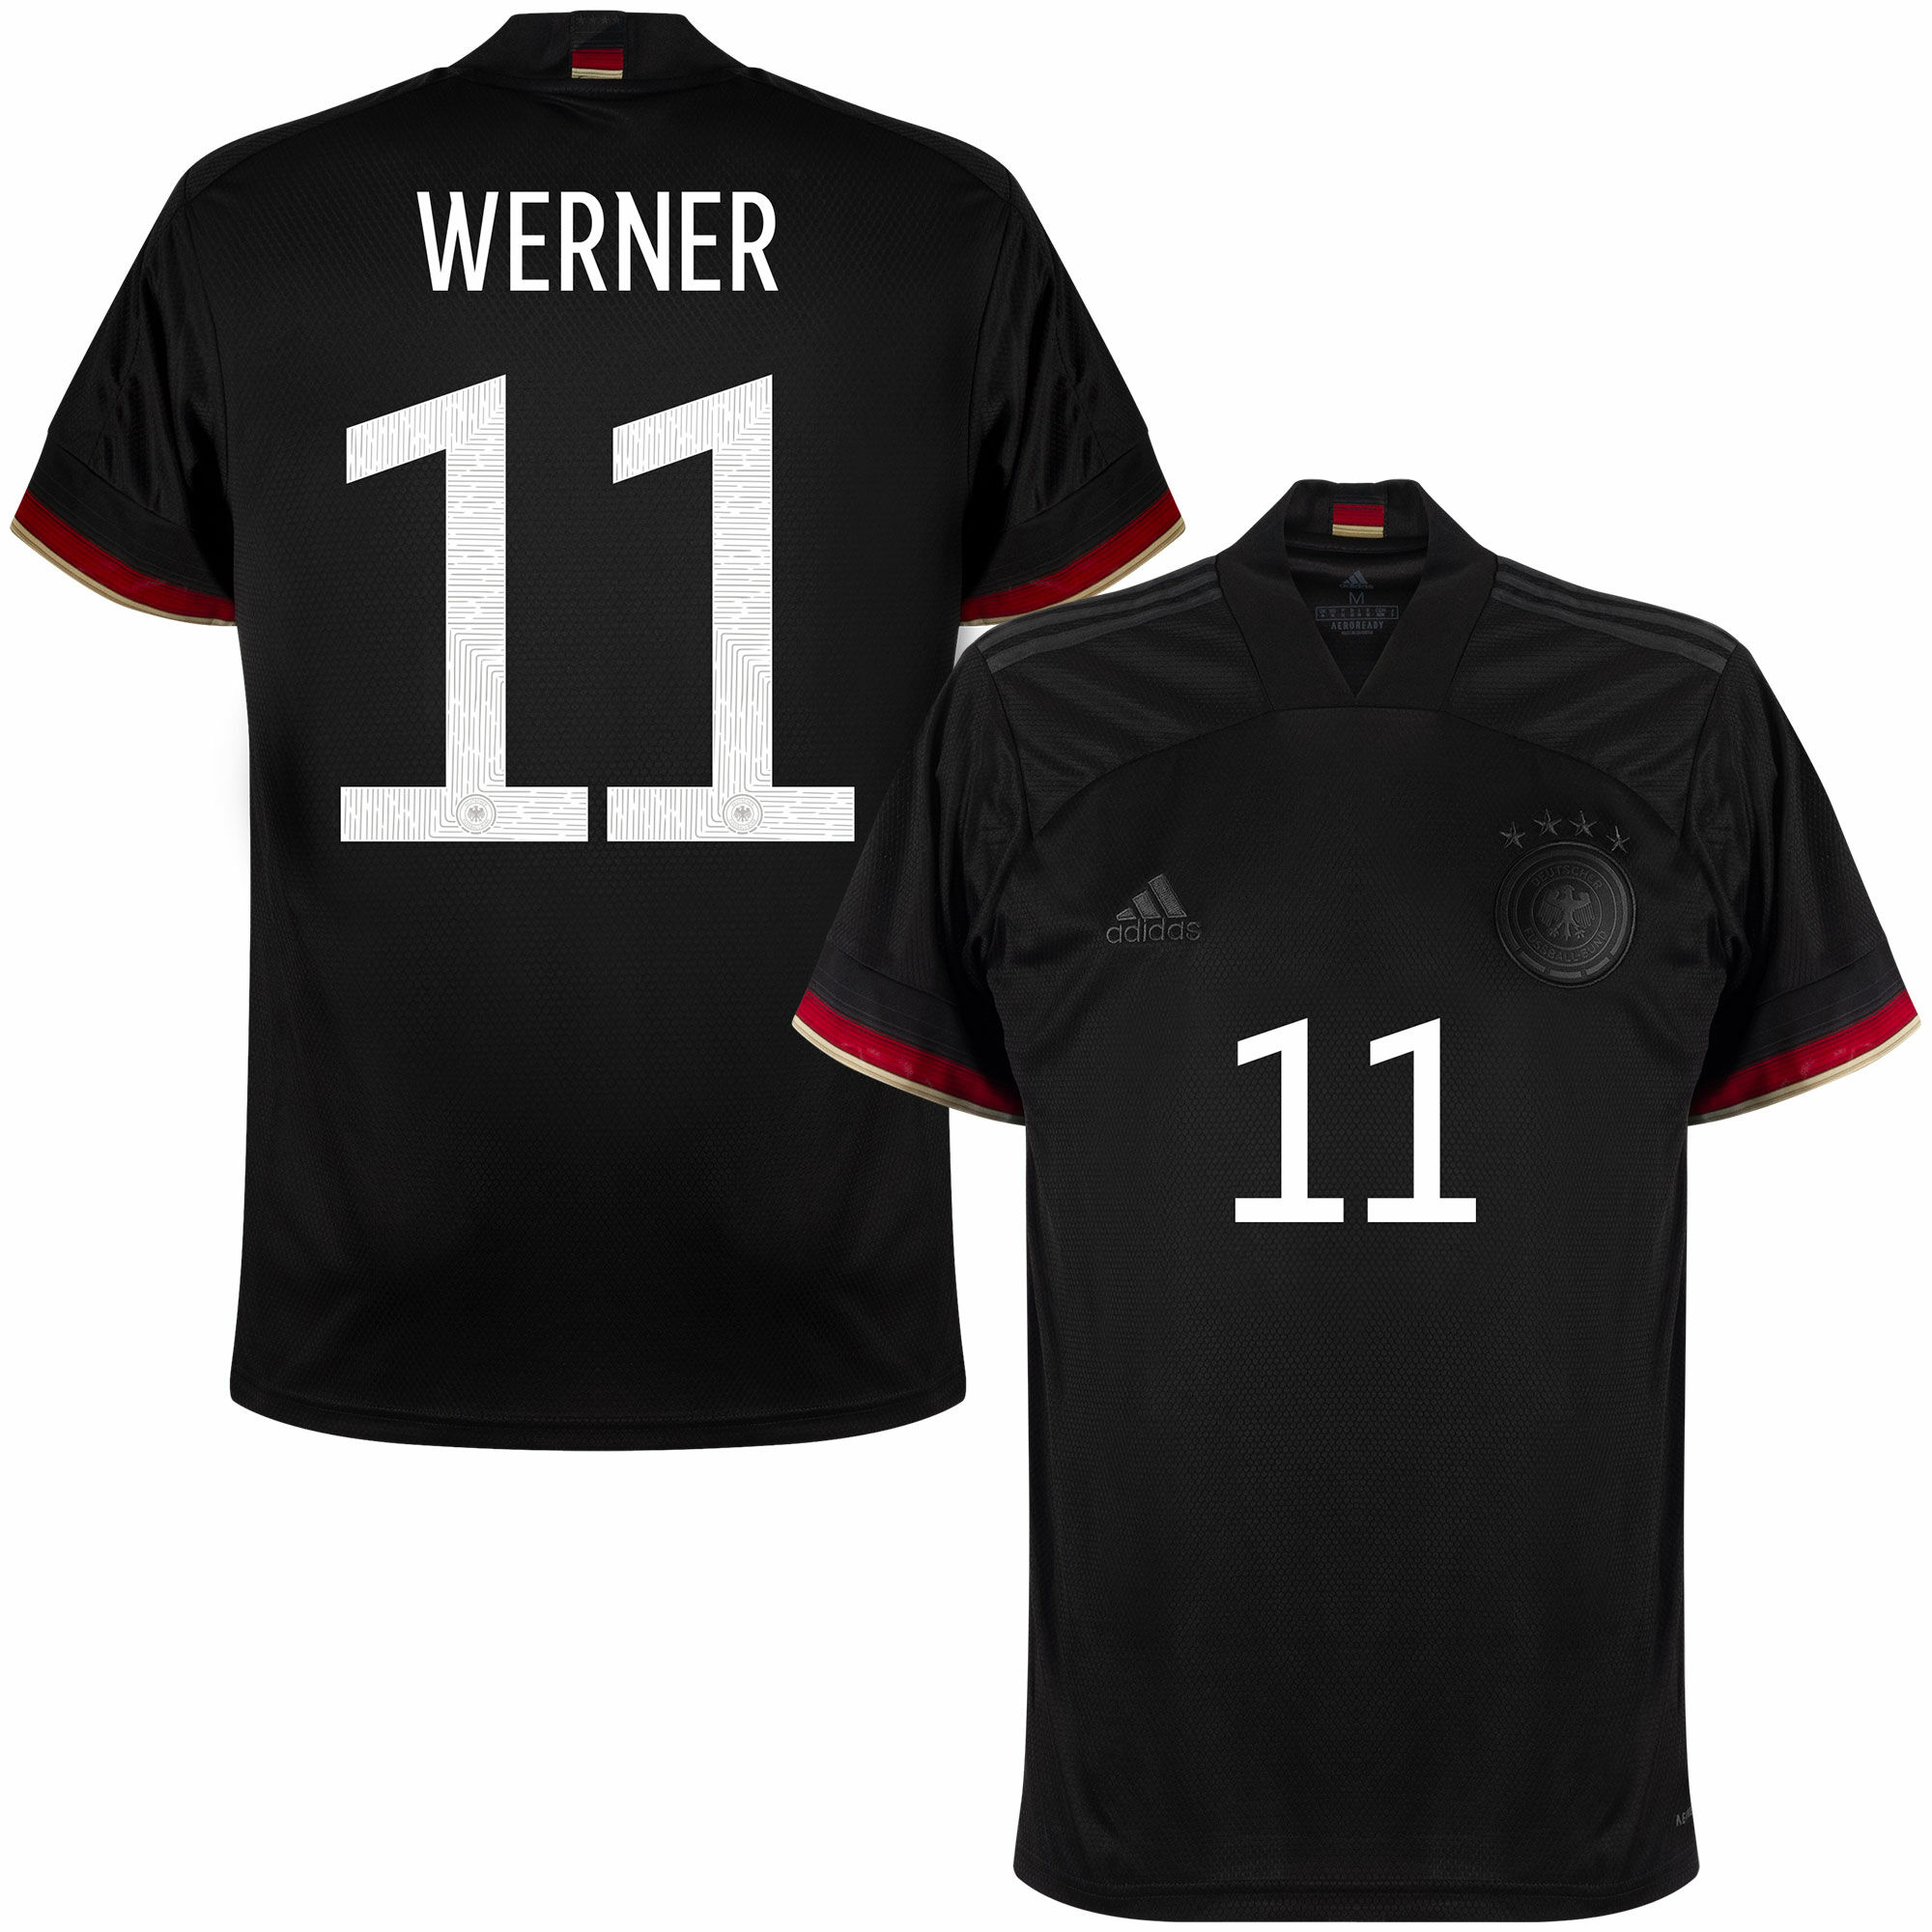 Německo - Dres fotbalový - sezóna 2021/22, Timo Werner, oficiální potisk, černý, číslo 11, venkovní